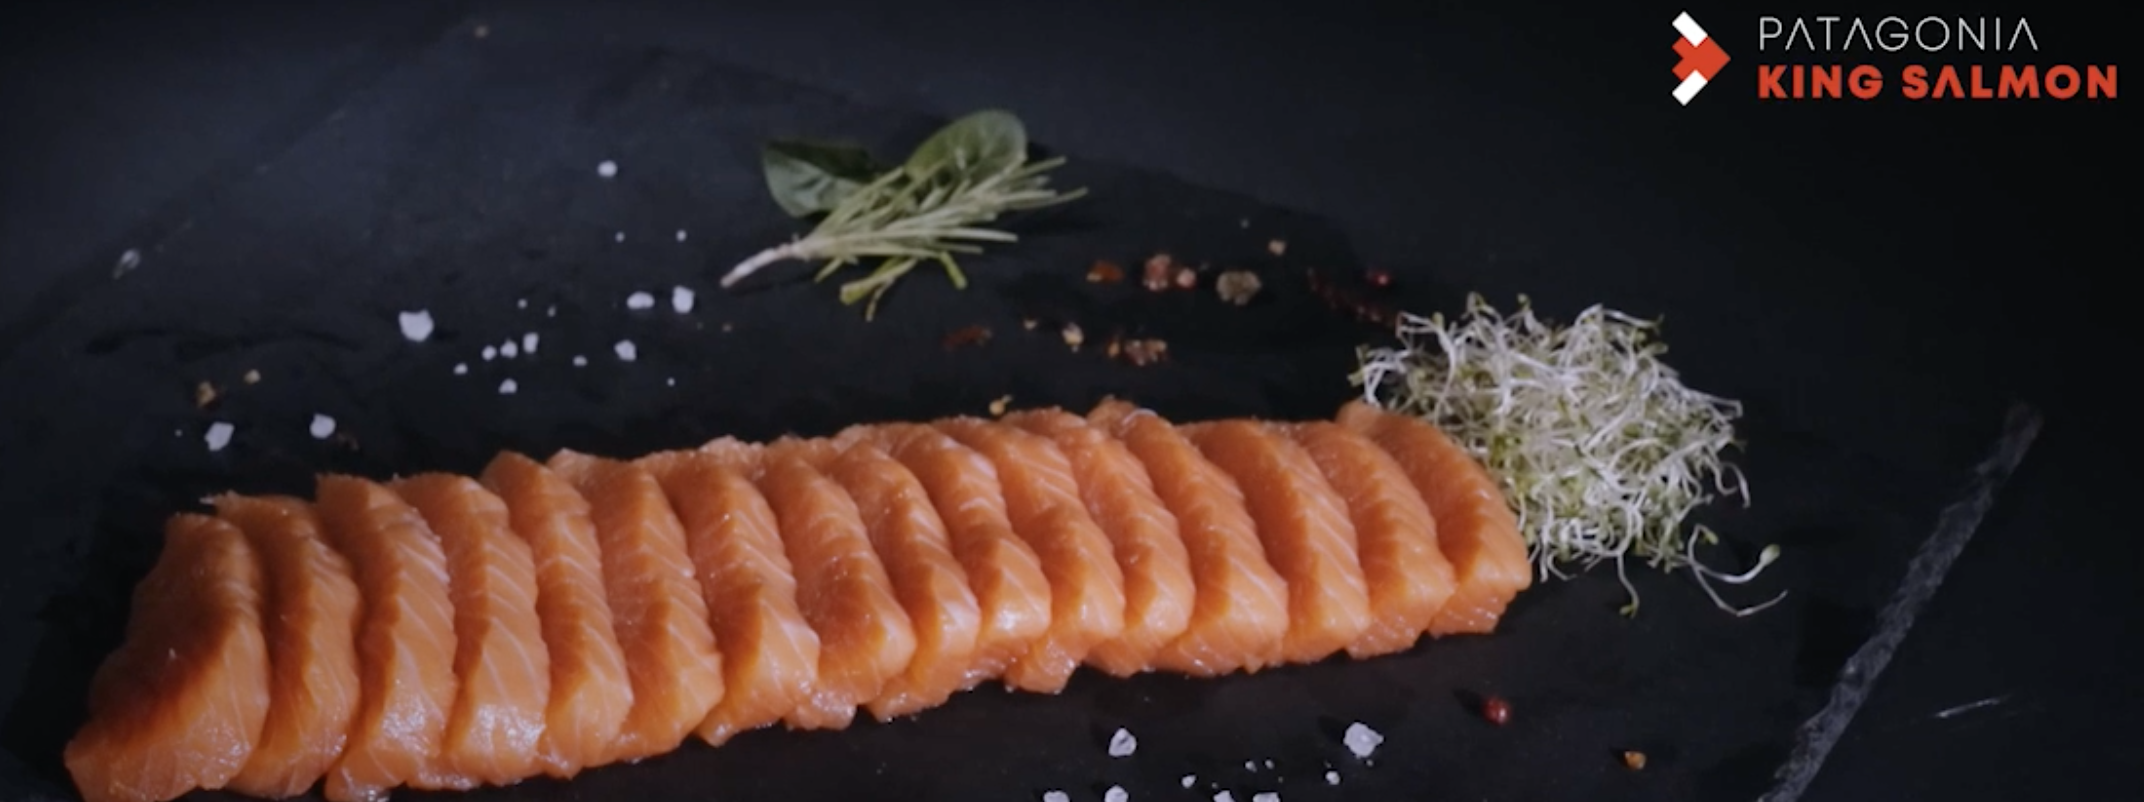 VENGEAN creëert neusje van de zalm voor eerste op land gekweekte king salmon  